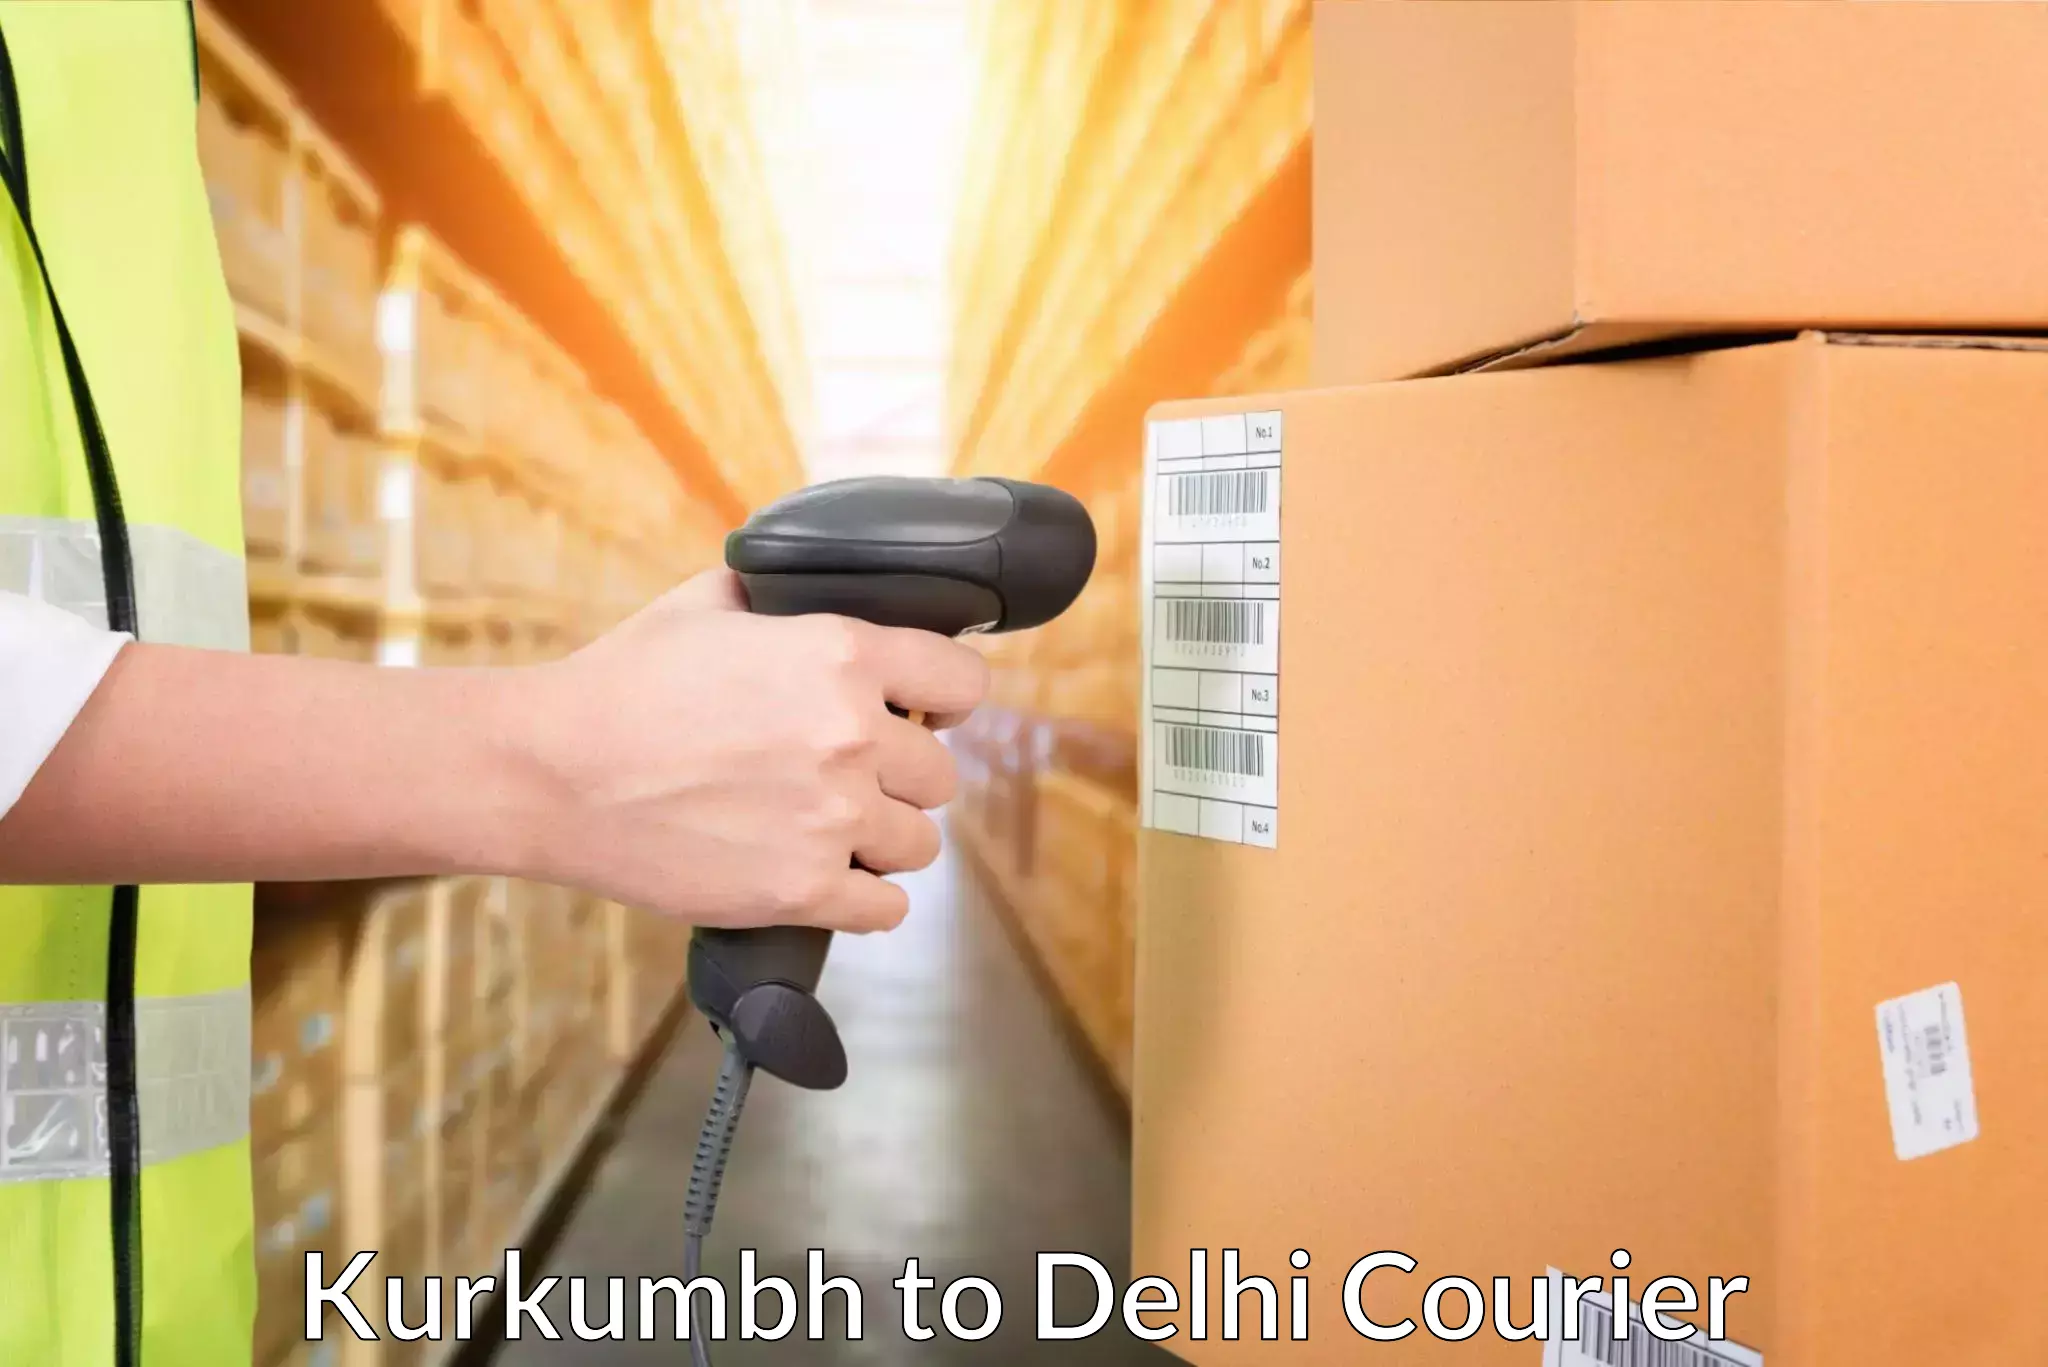 Advanced shipping services Kurkumbh to East Delhi